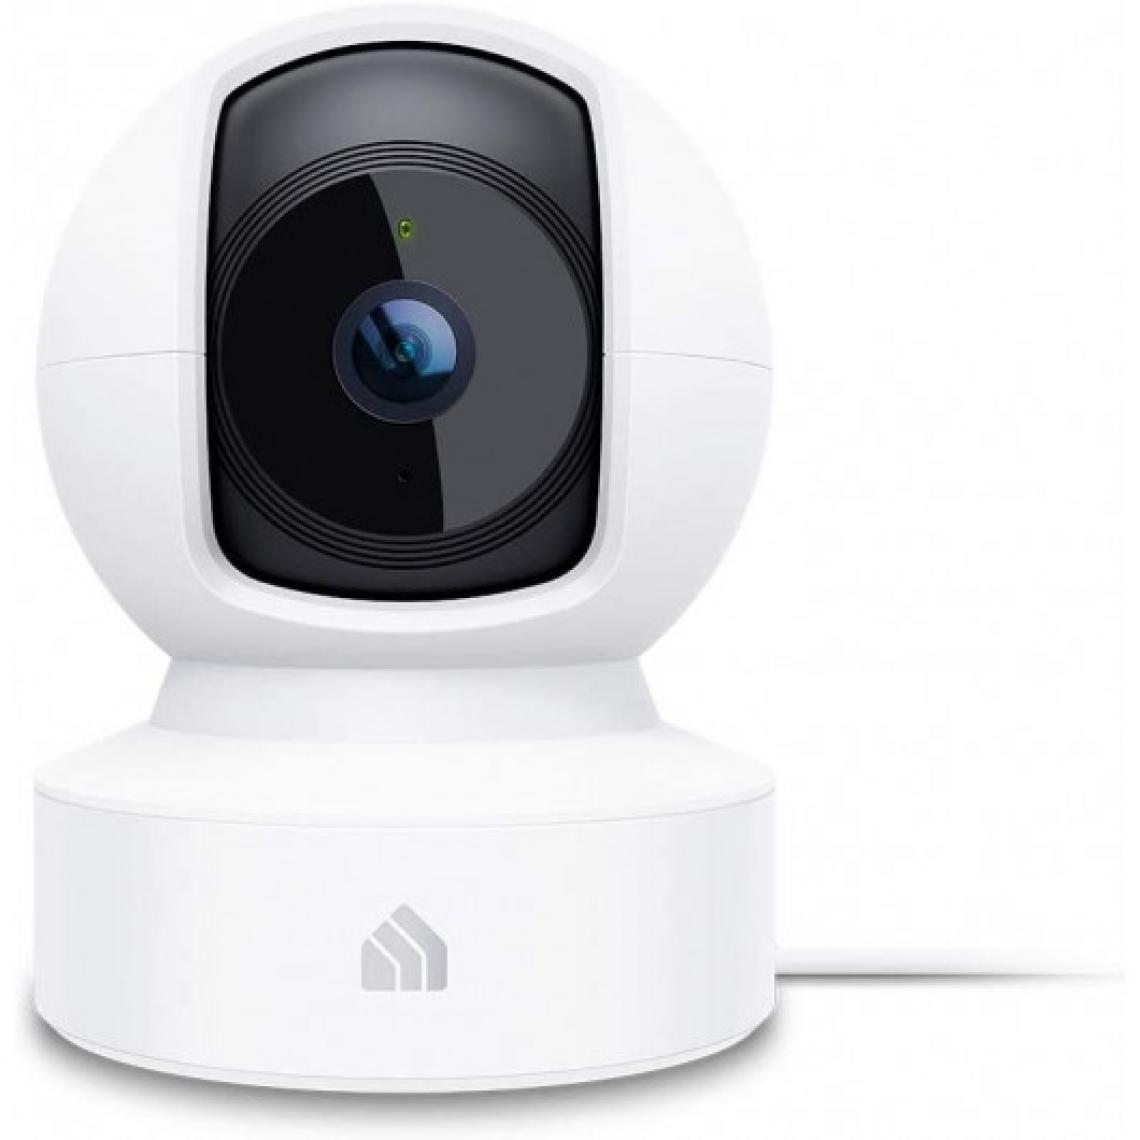 TP-LINK - Kasa Spot Pan Tilt, la caméra domestique - Caméra de surveillance connectée